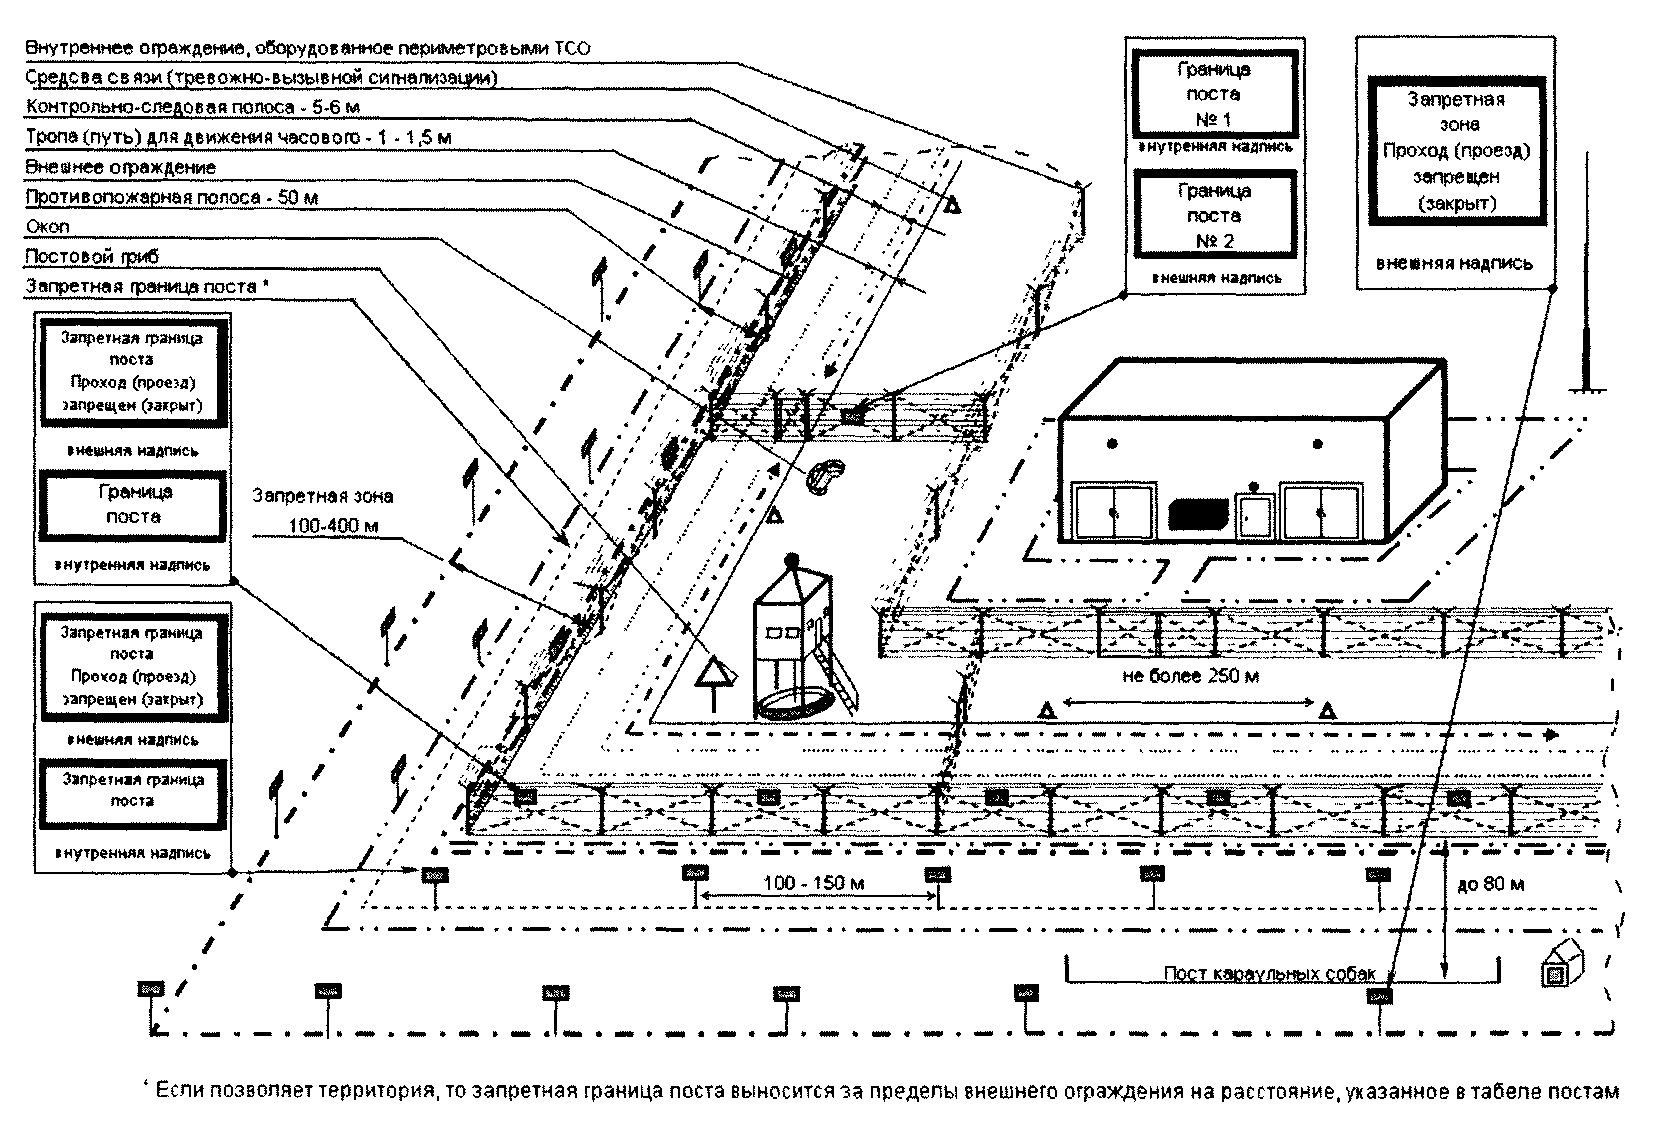 Инструкция по составлению табеля боевого расчета на случай пожара